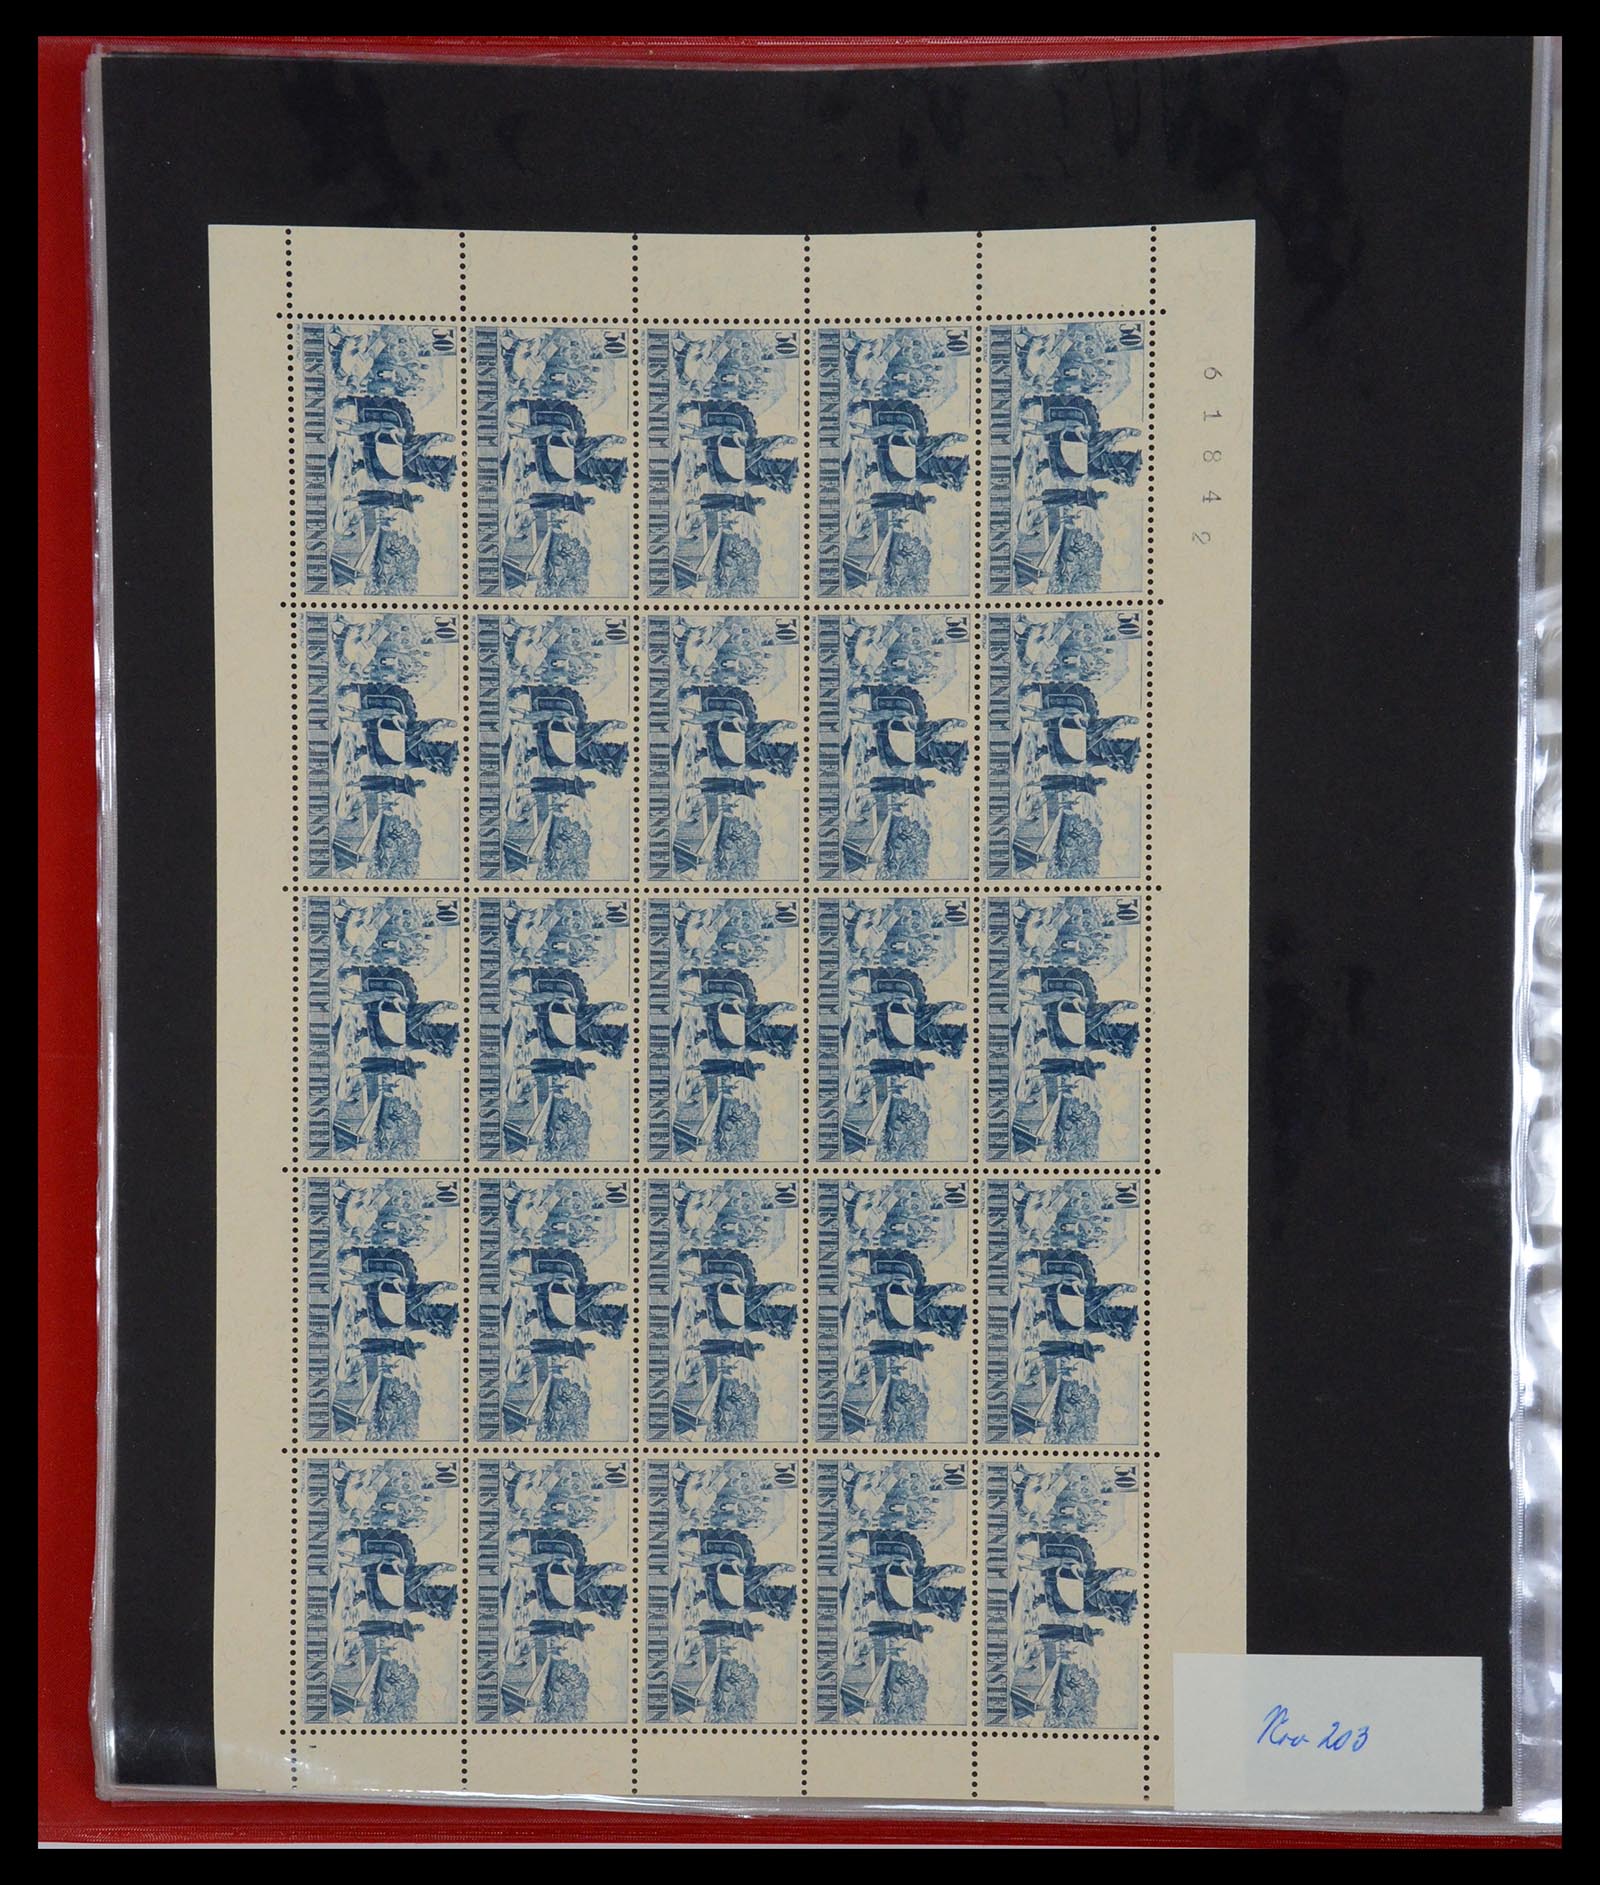 36280 021 - Stamp collection 36280 Liechtenstein souvenir sheets and sheetlets 1934-